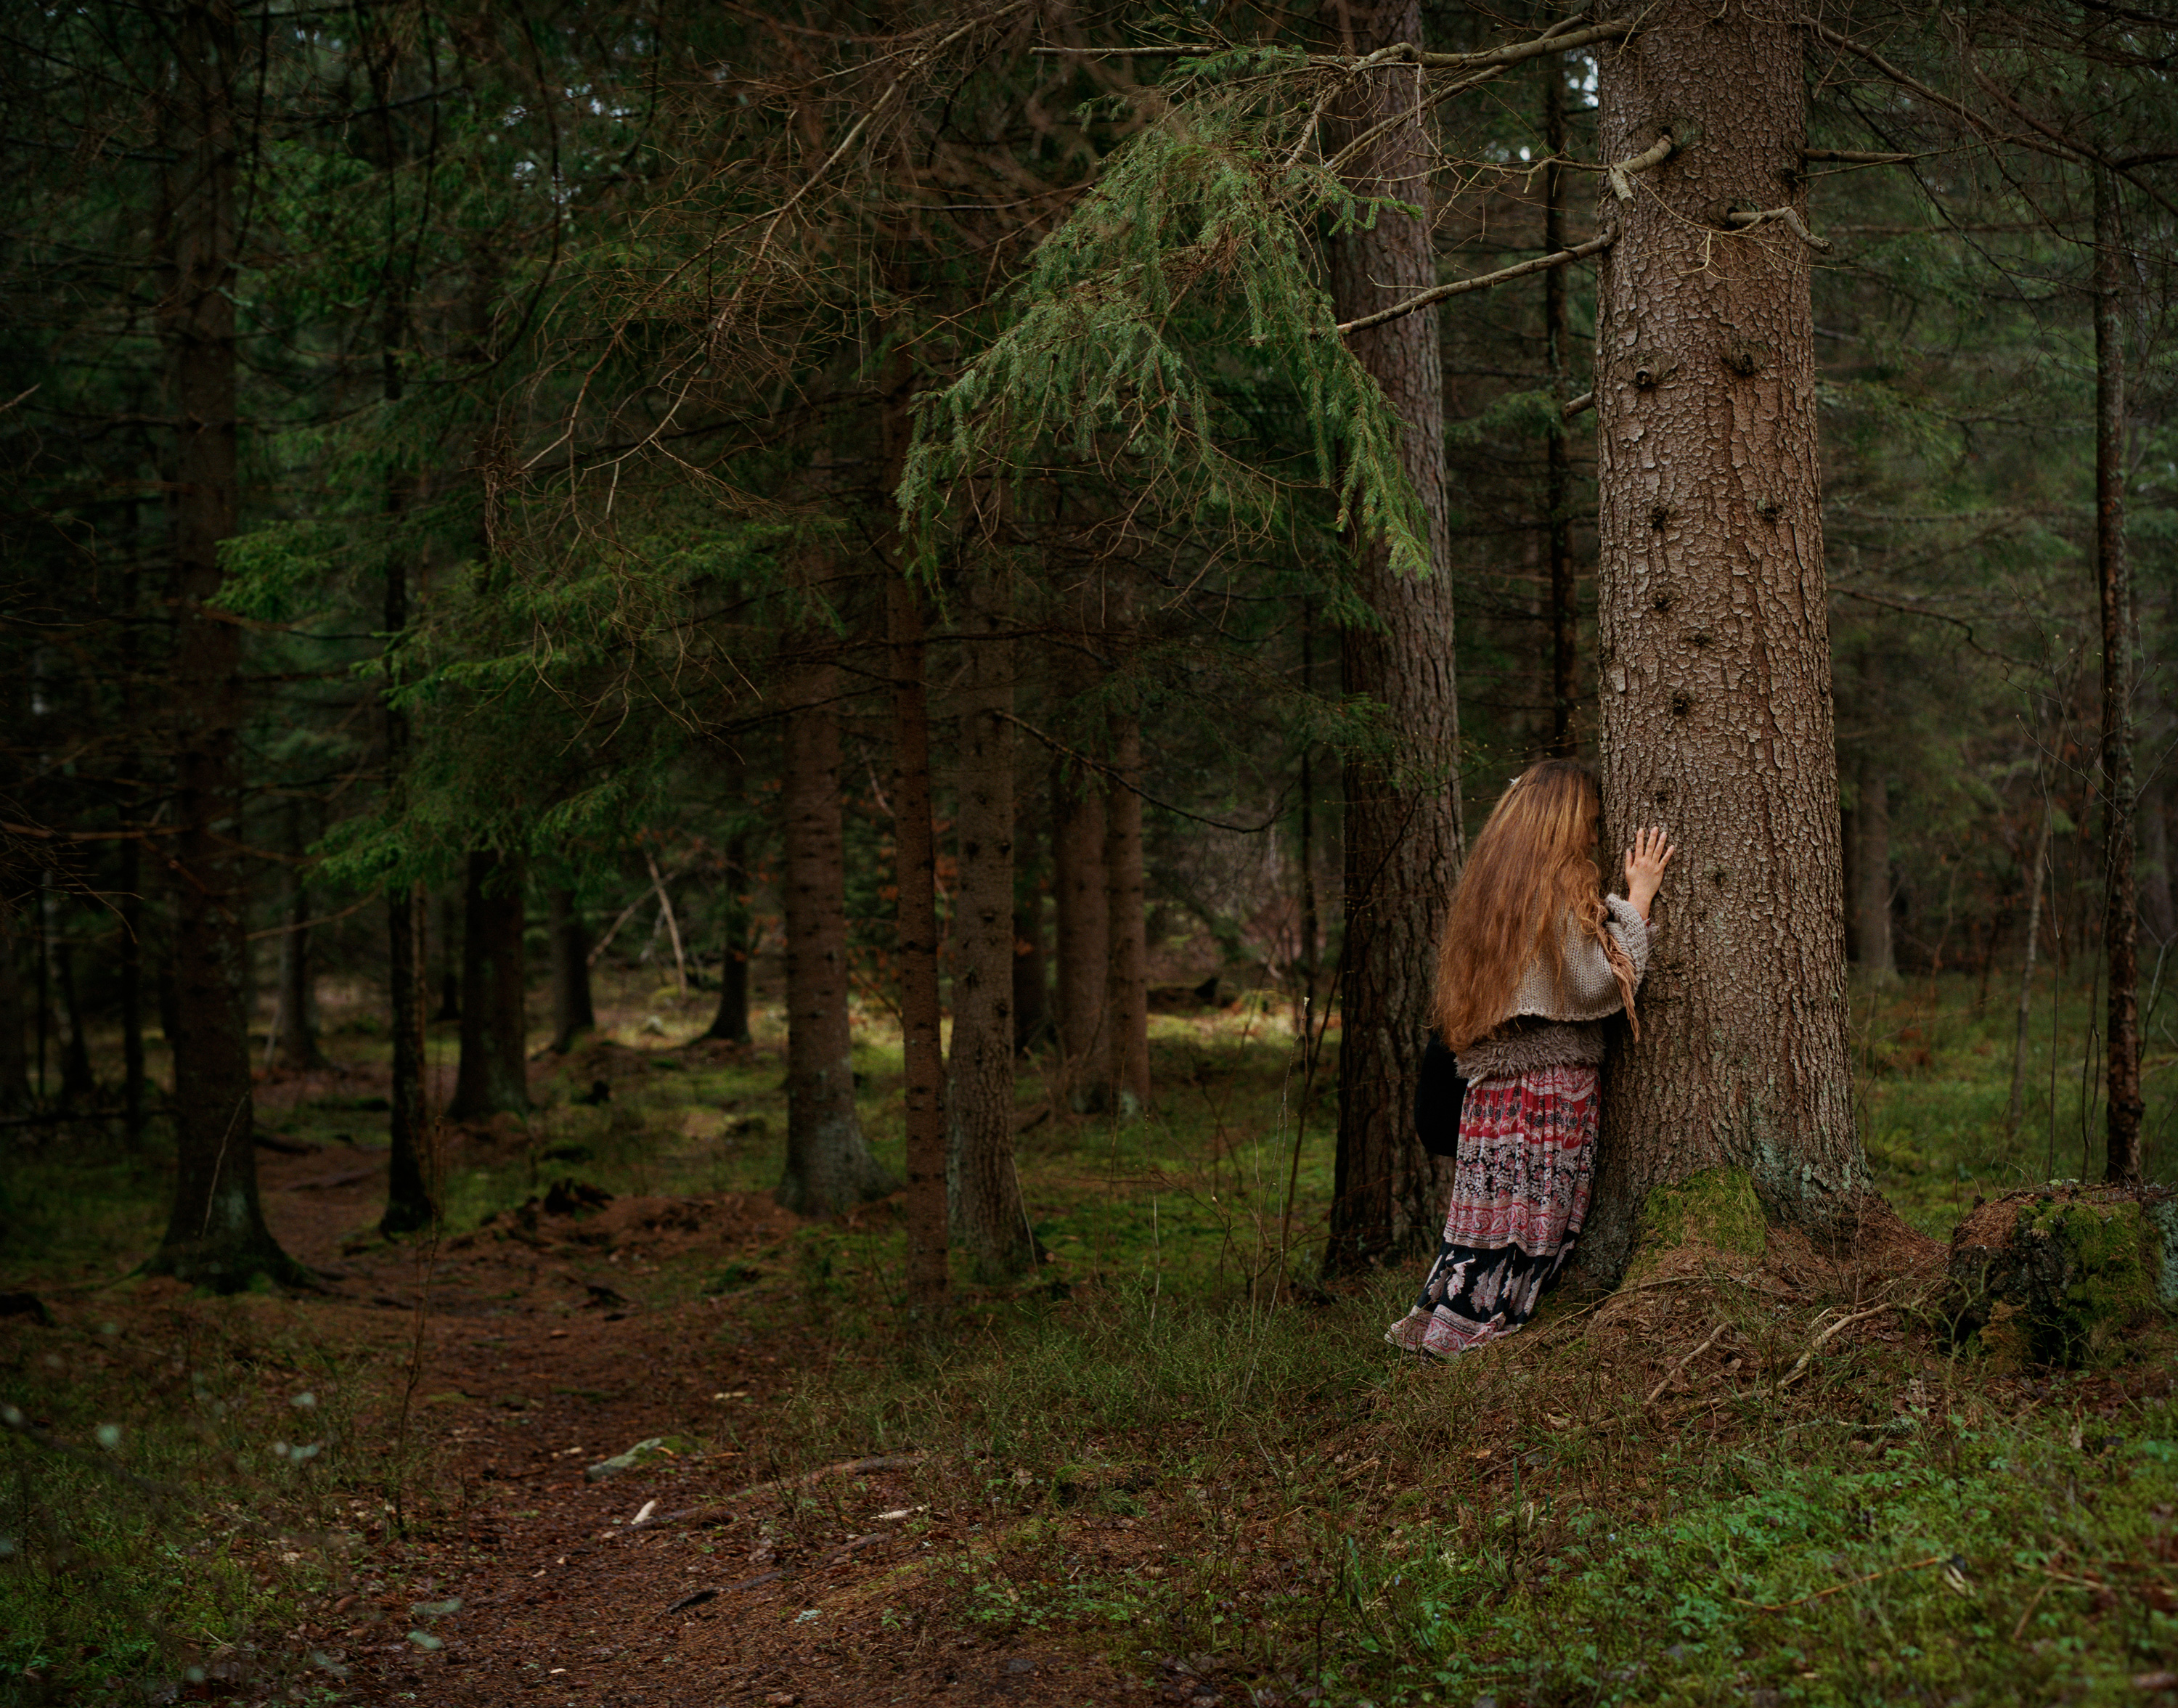 foto av djup skog och en kvinnogestalt i långt hår som lutar pannan mot ett träd